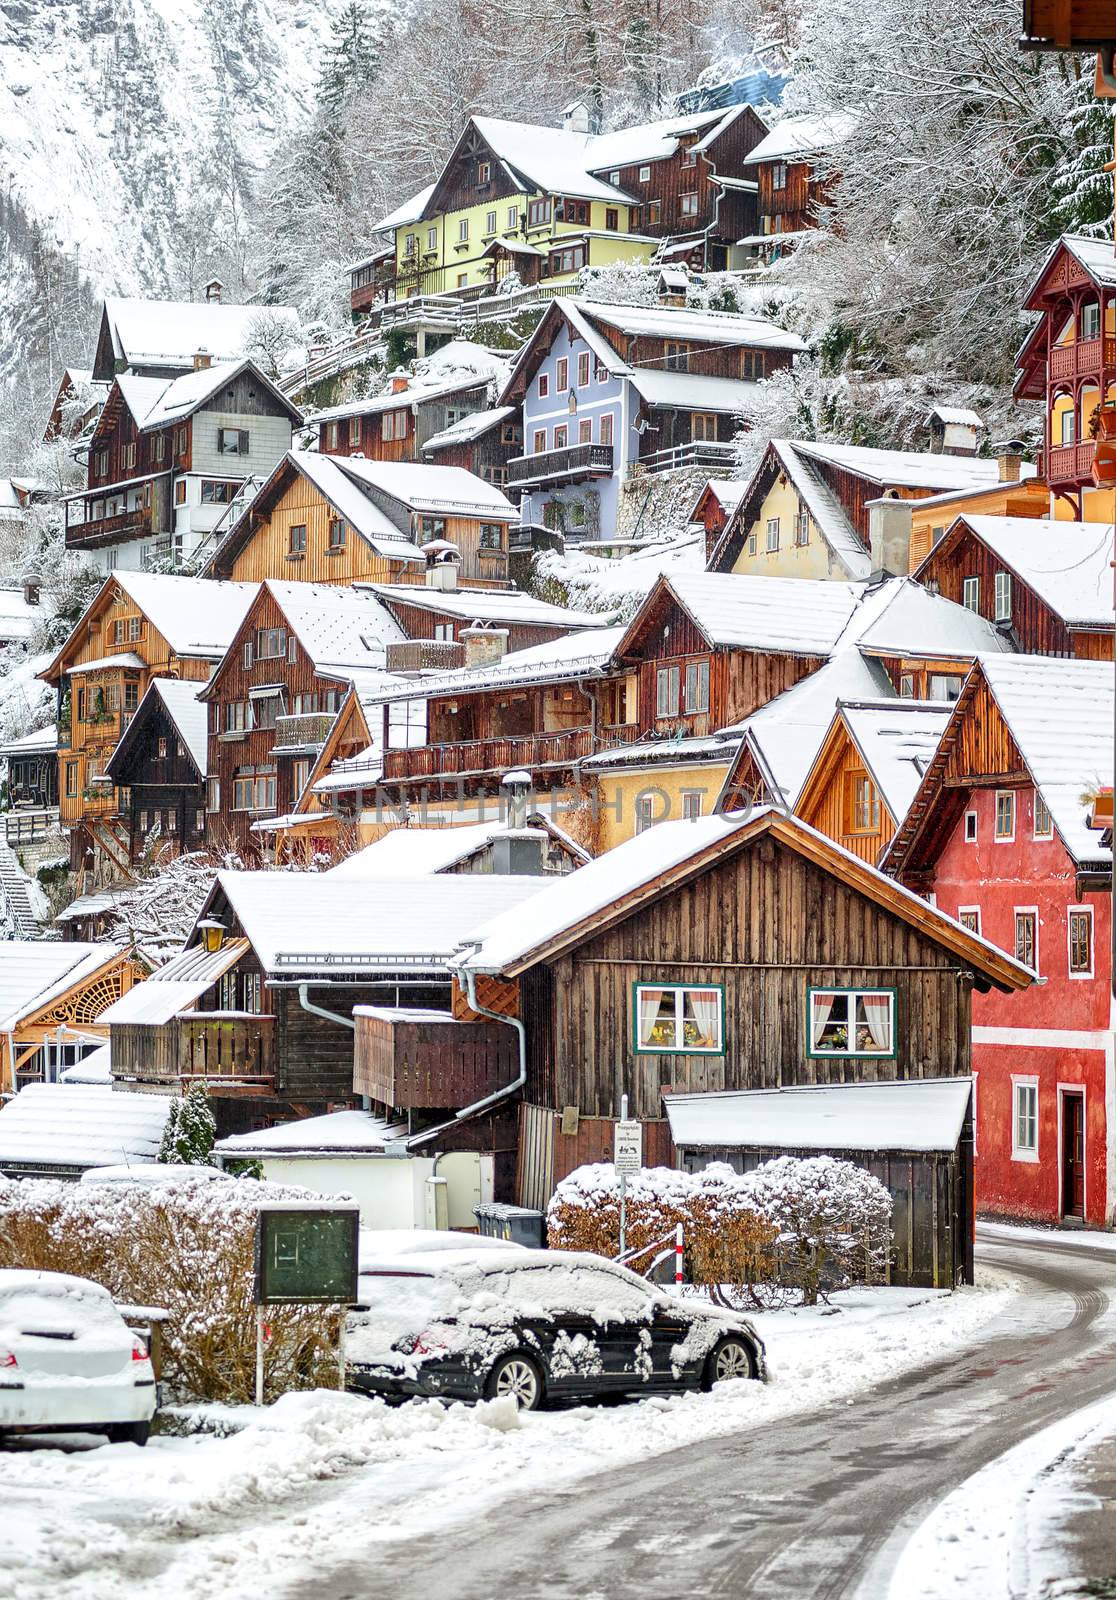 Wooden houses in Hallstatt, austrian alpine village by Salzburg by GlobePhotos